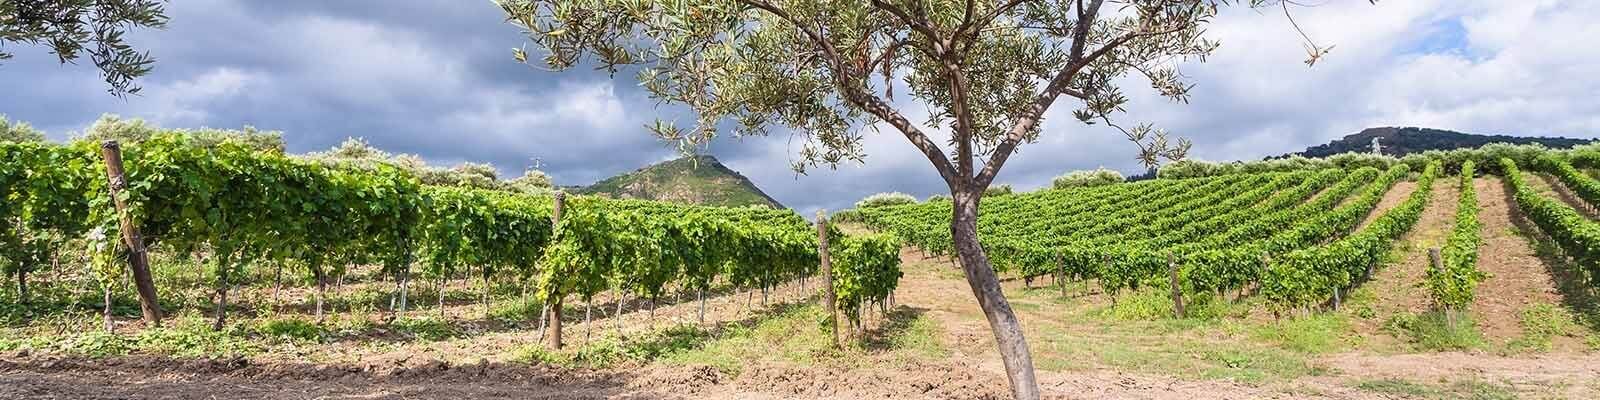 Onze Sicilië collectie - Vind deze bij Onshore Cellars uw jacht wijn leverancier